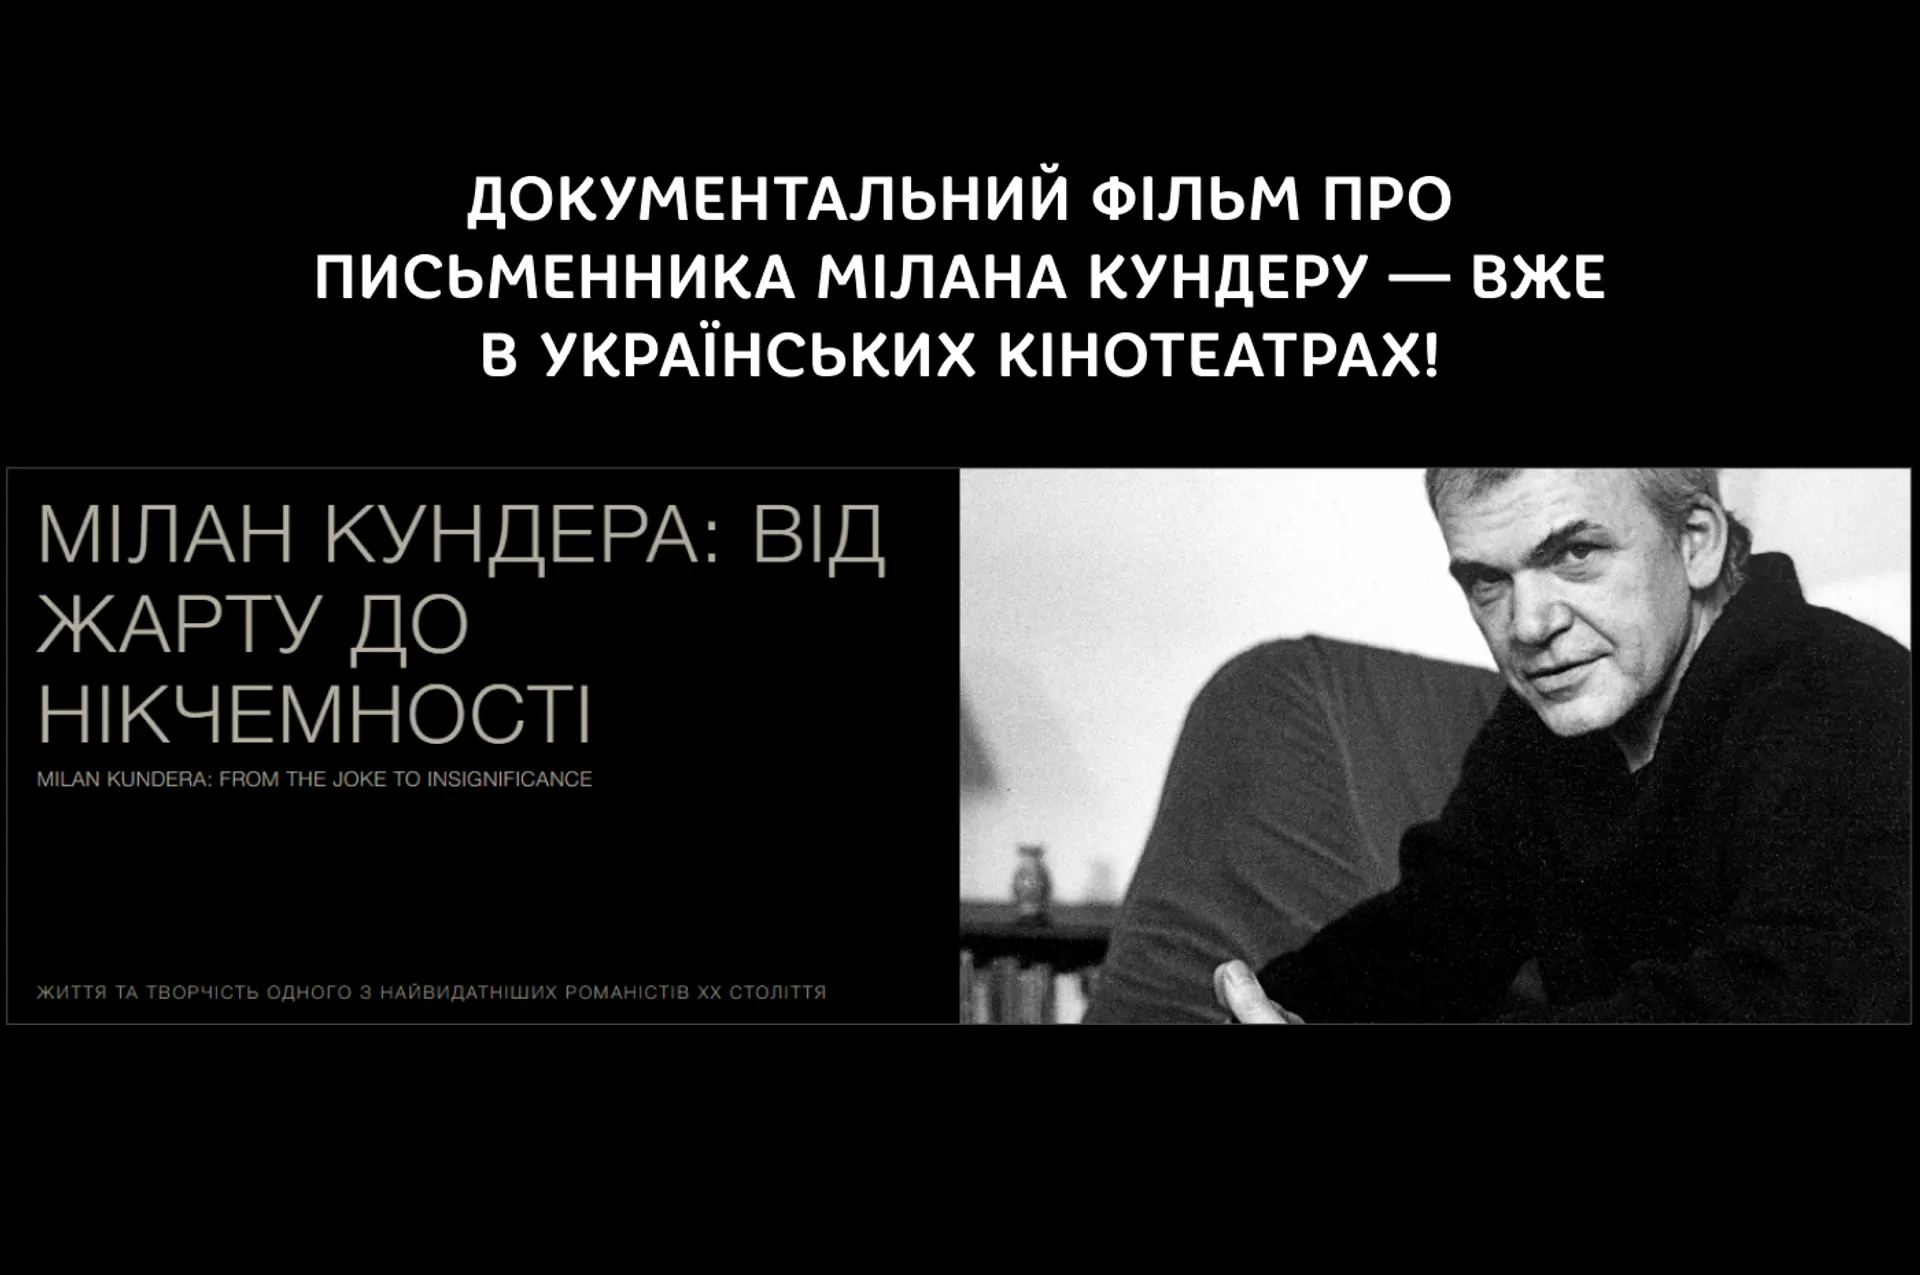 Документальний фільм про письменника Мілана Кундеру — вже в українських кінотеатрах!